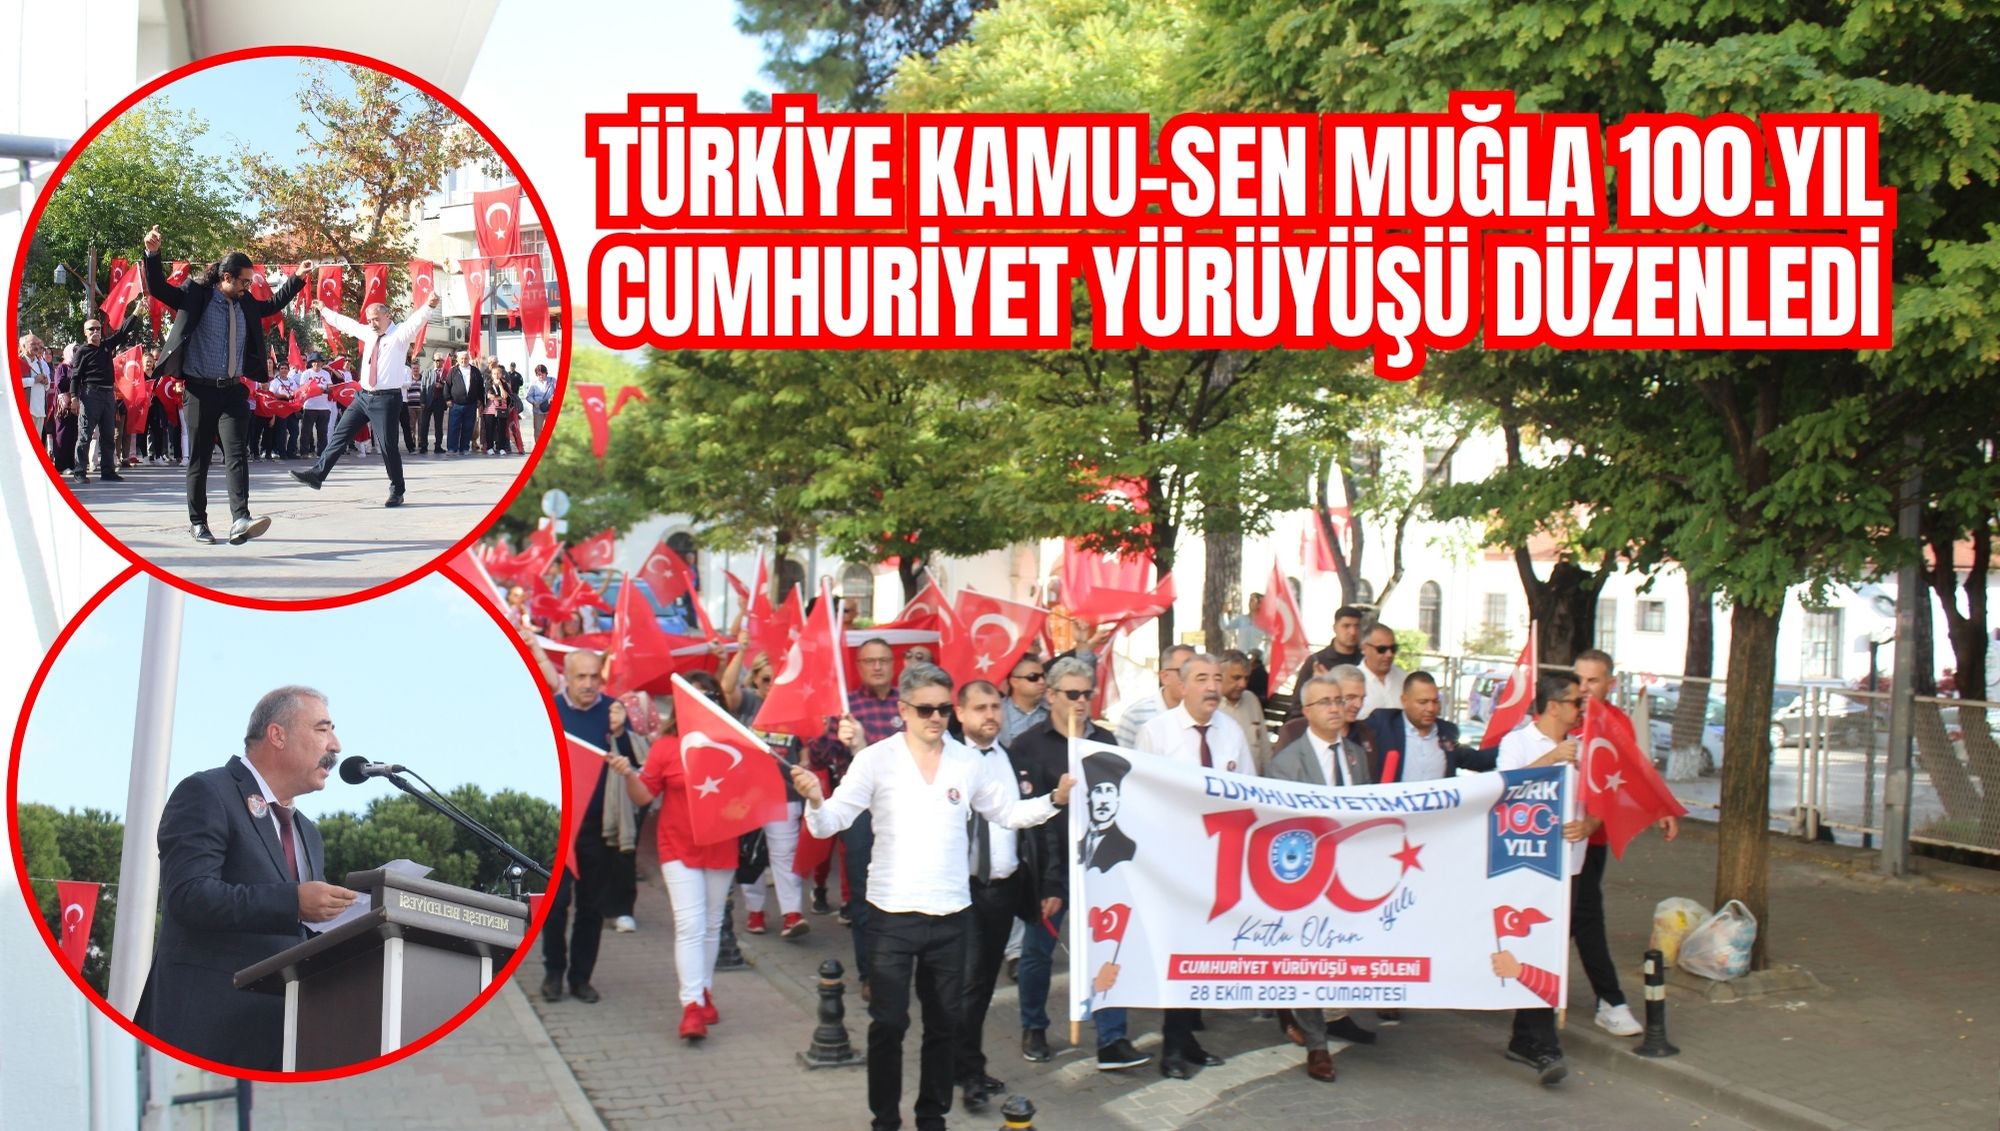 Türkiye Kamu-Sen Muğla 100.Yıl Cumhuriyet Yürüyüşü düzenledi